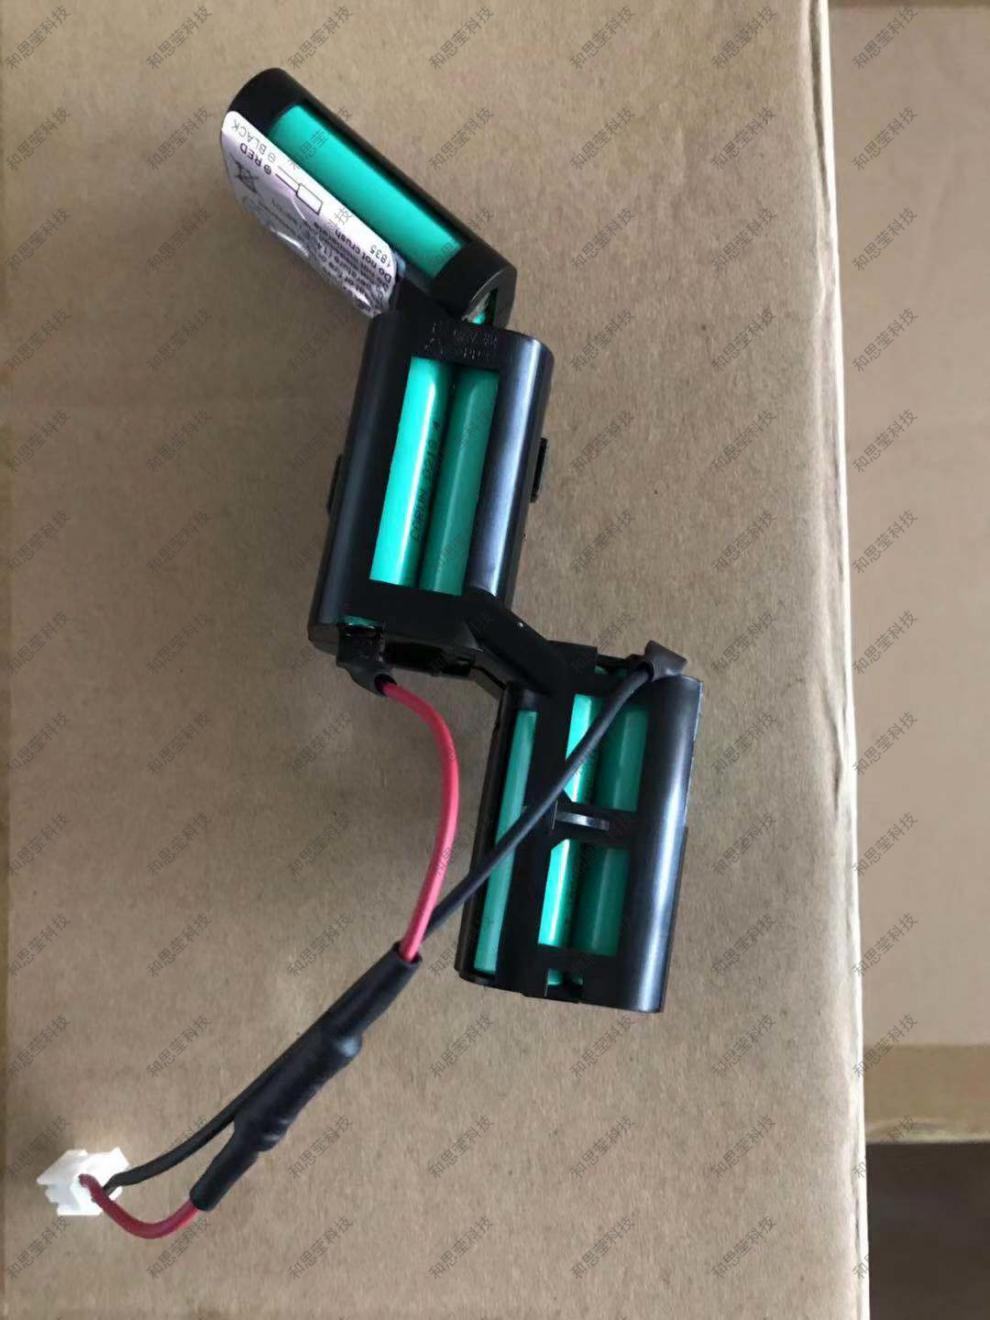 飞利浦fc616持吸尘器全新12v原装充电电池配件视频指导安装绿色